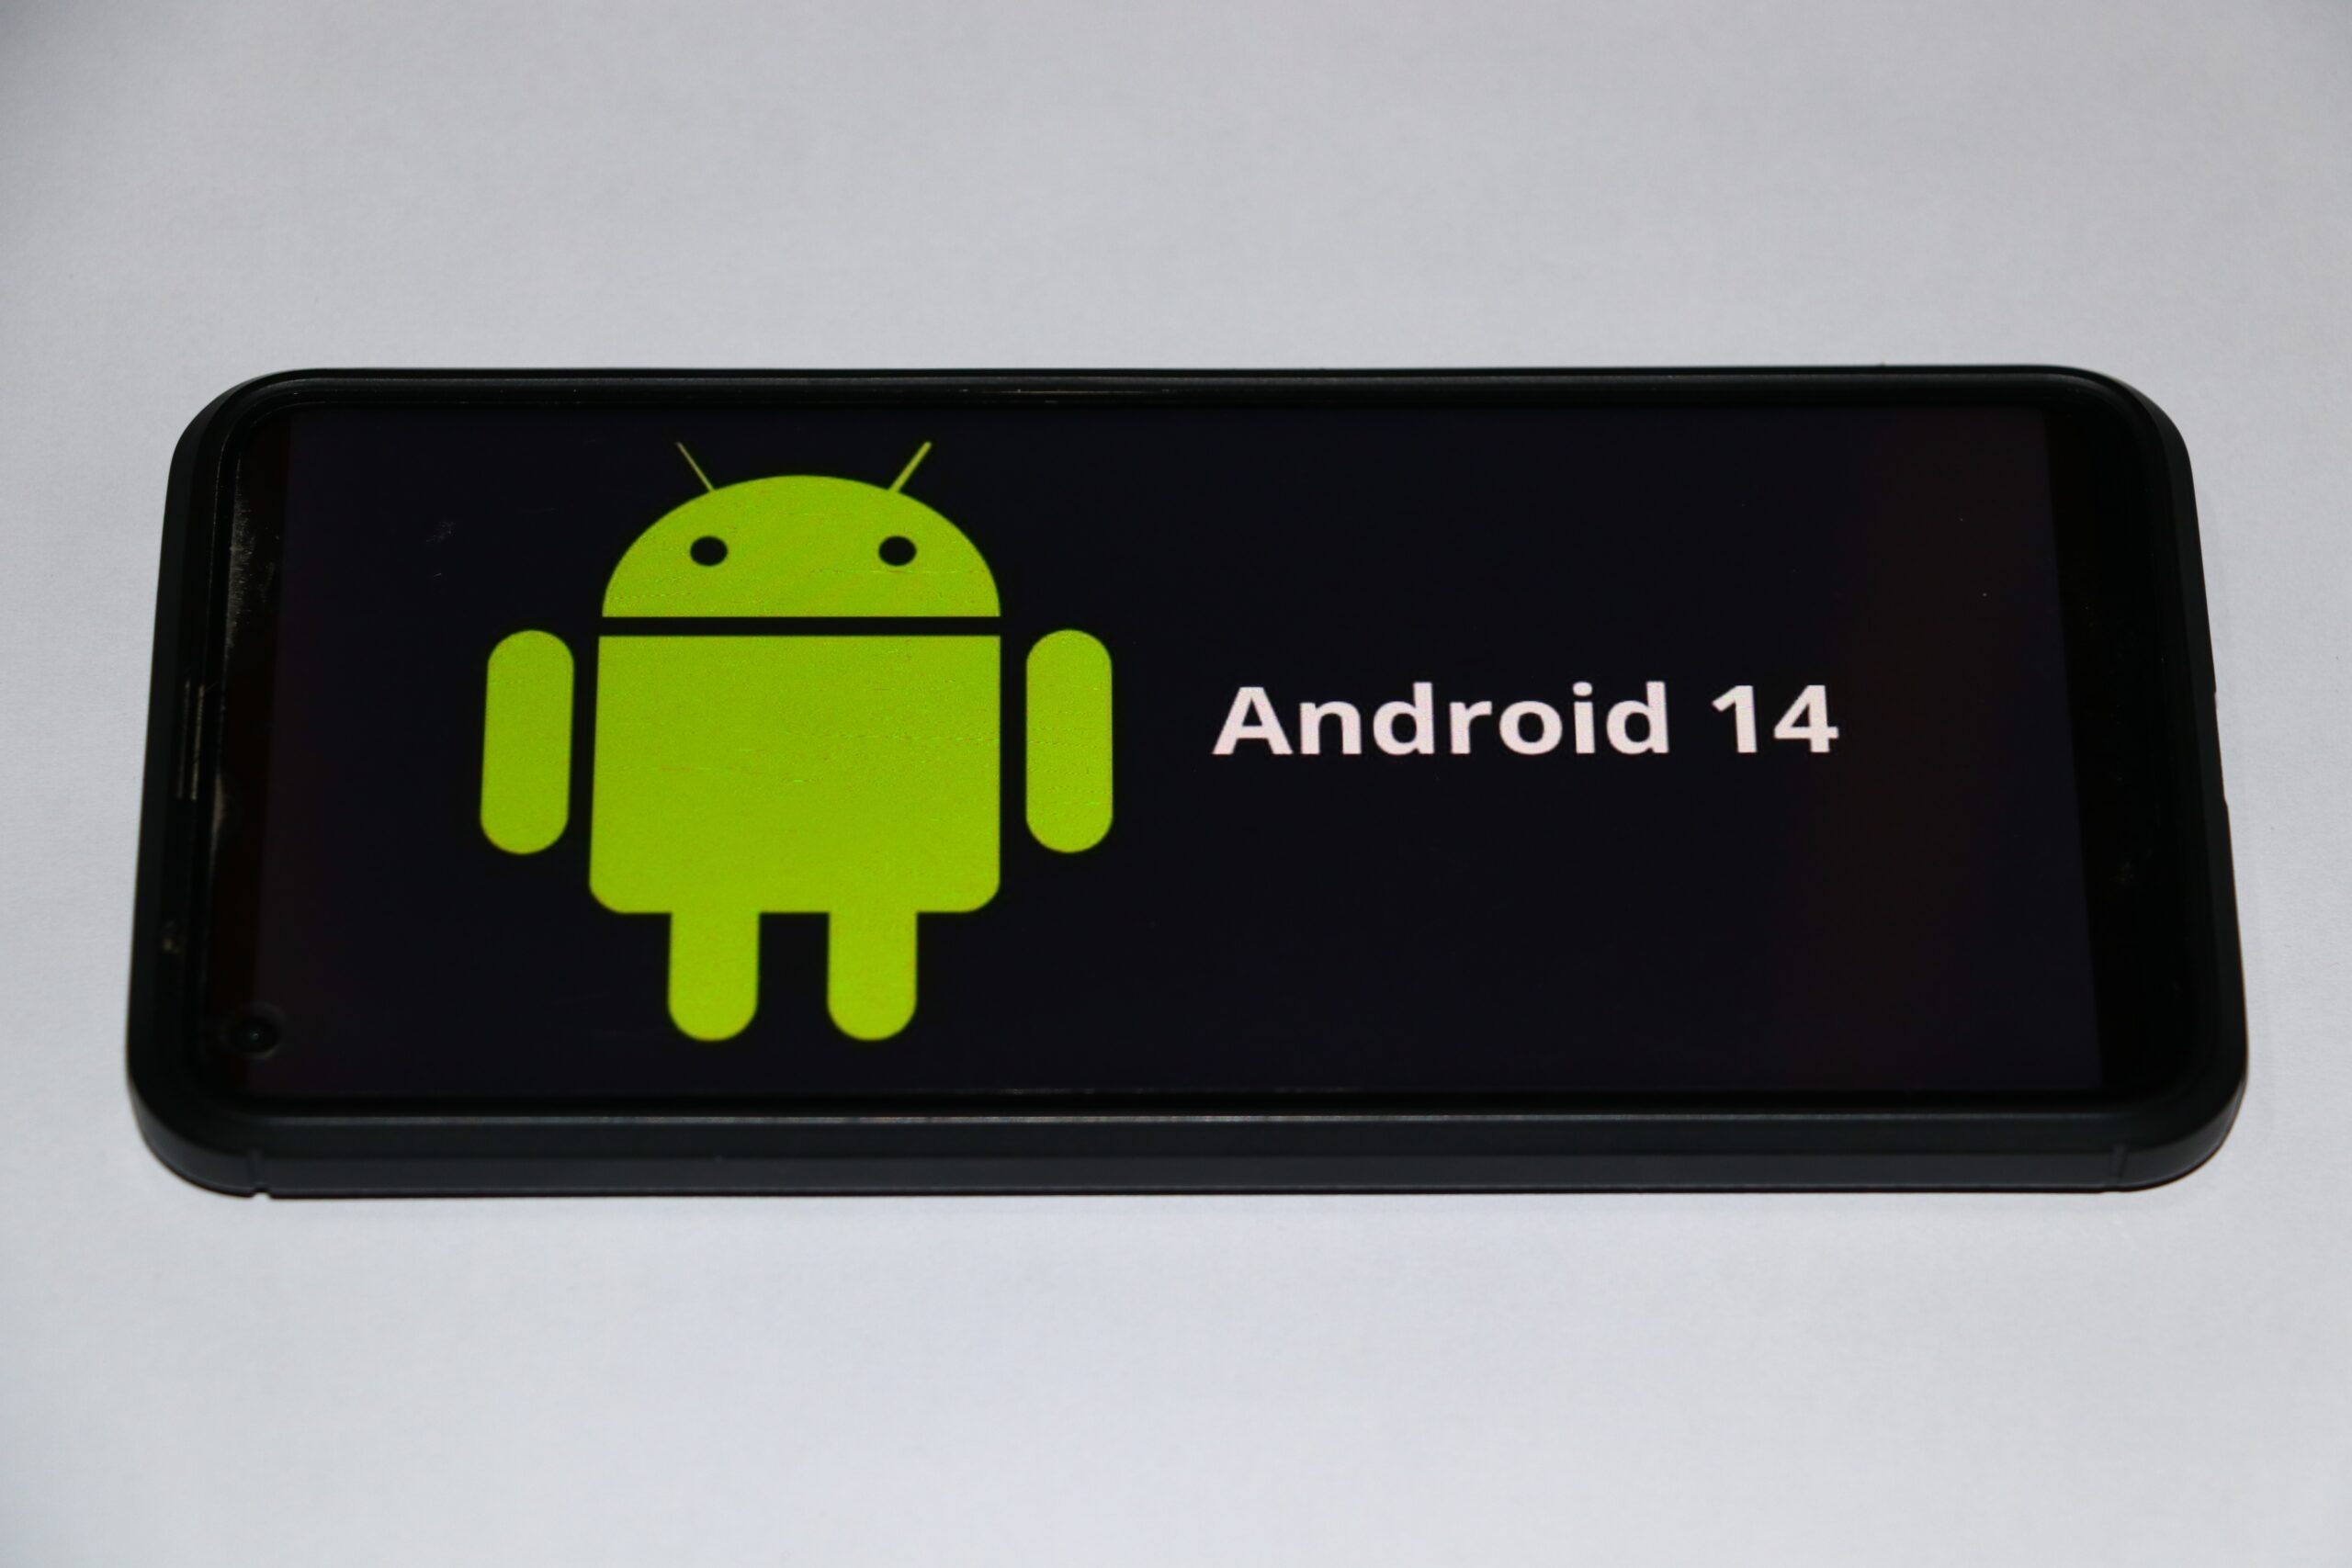 Imagem mostra um smartphone com o logotipo não oficial do Android 14